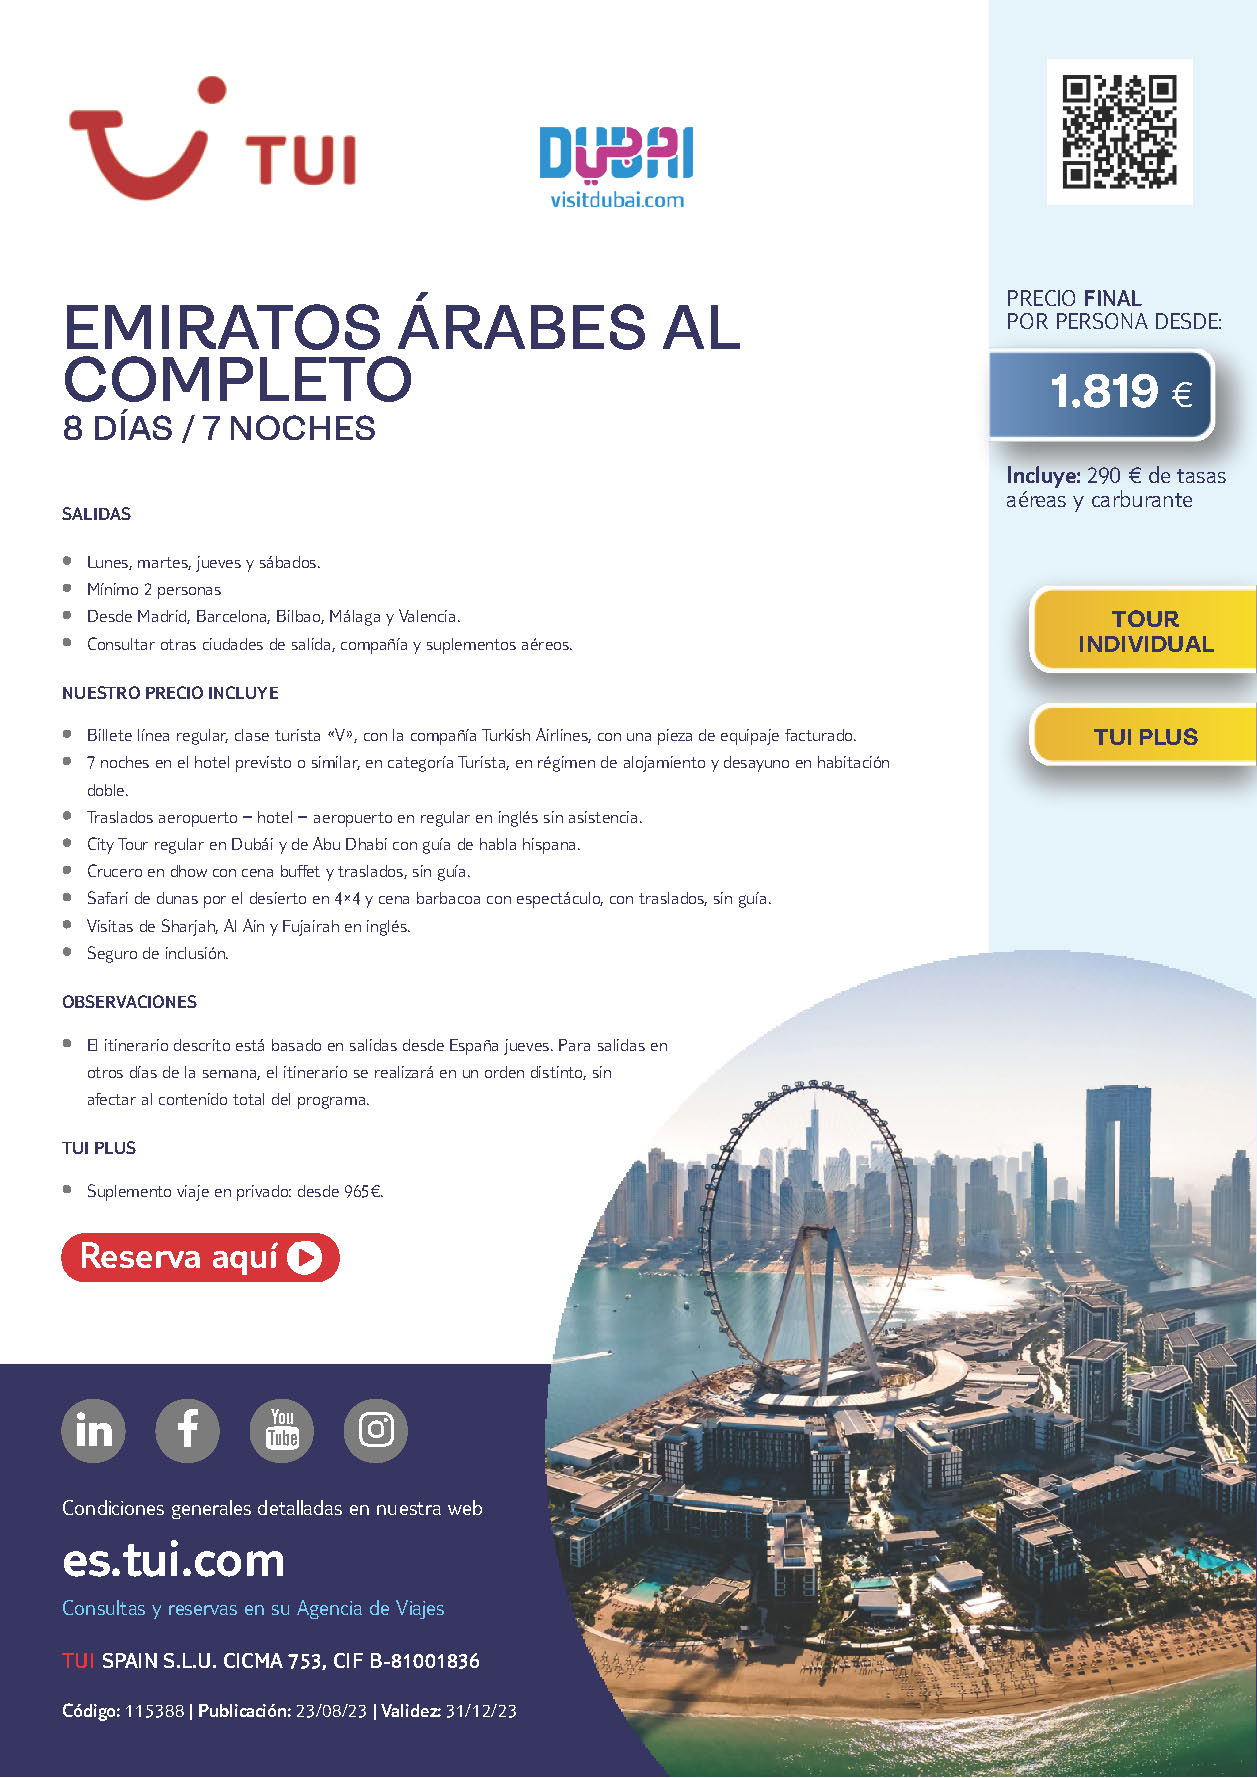 Oferta TUI Emiratos Arabes al Completo 8 dias salidas Enero a Diciembre 2024 desde Madrid Barcelona Bilbao Valencia Malaga vuelos Turkish Airlines